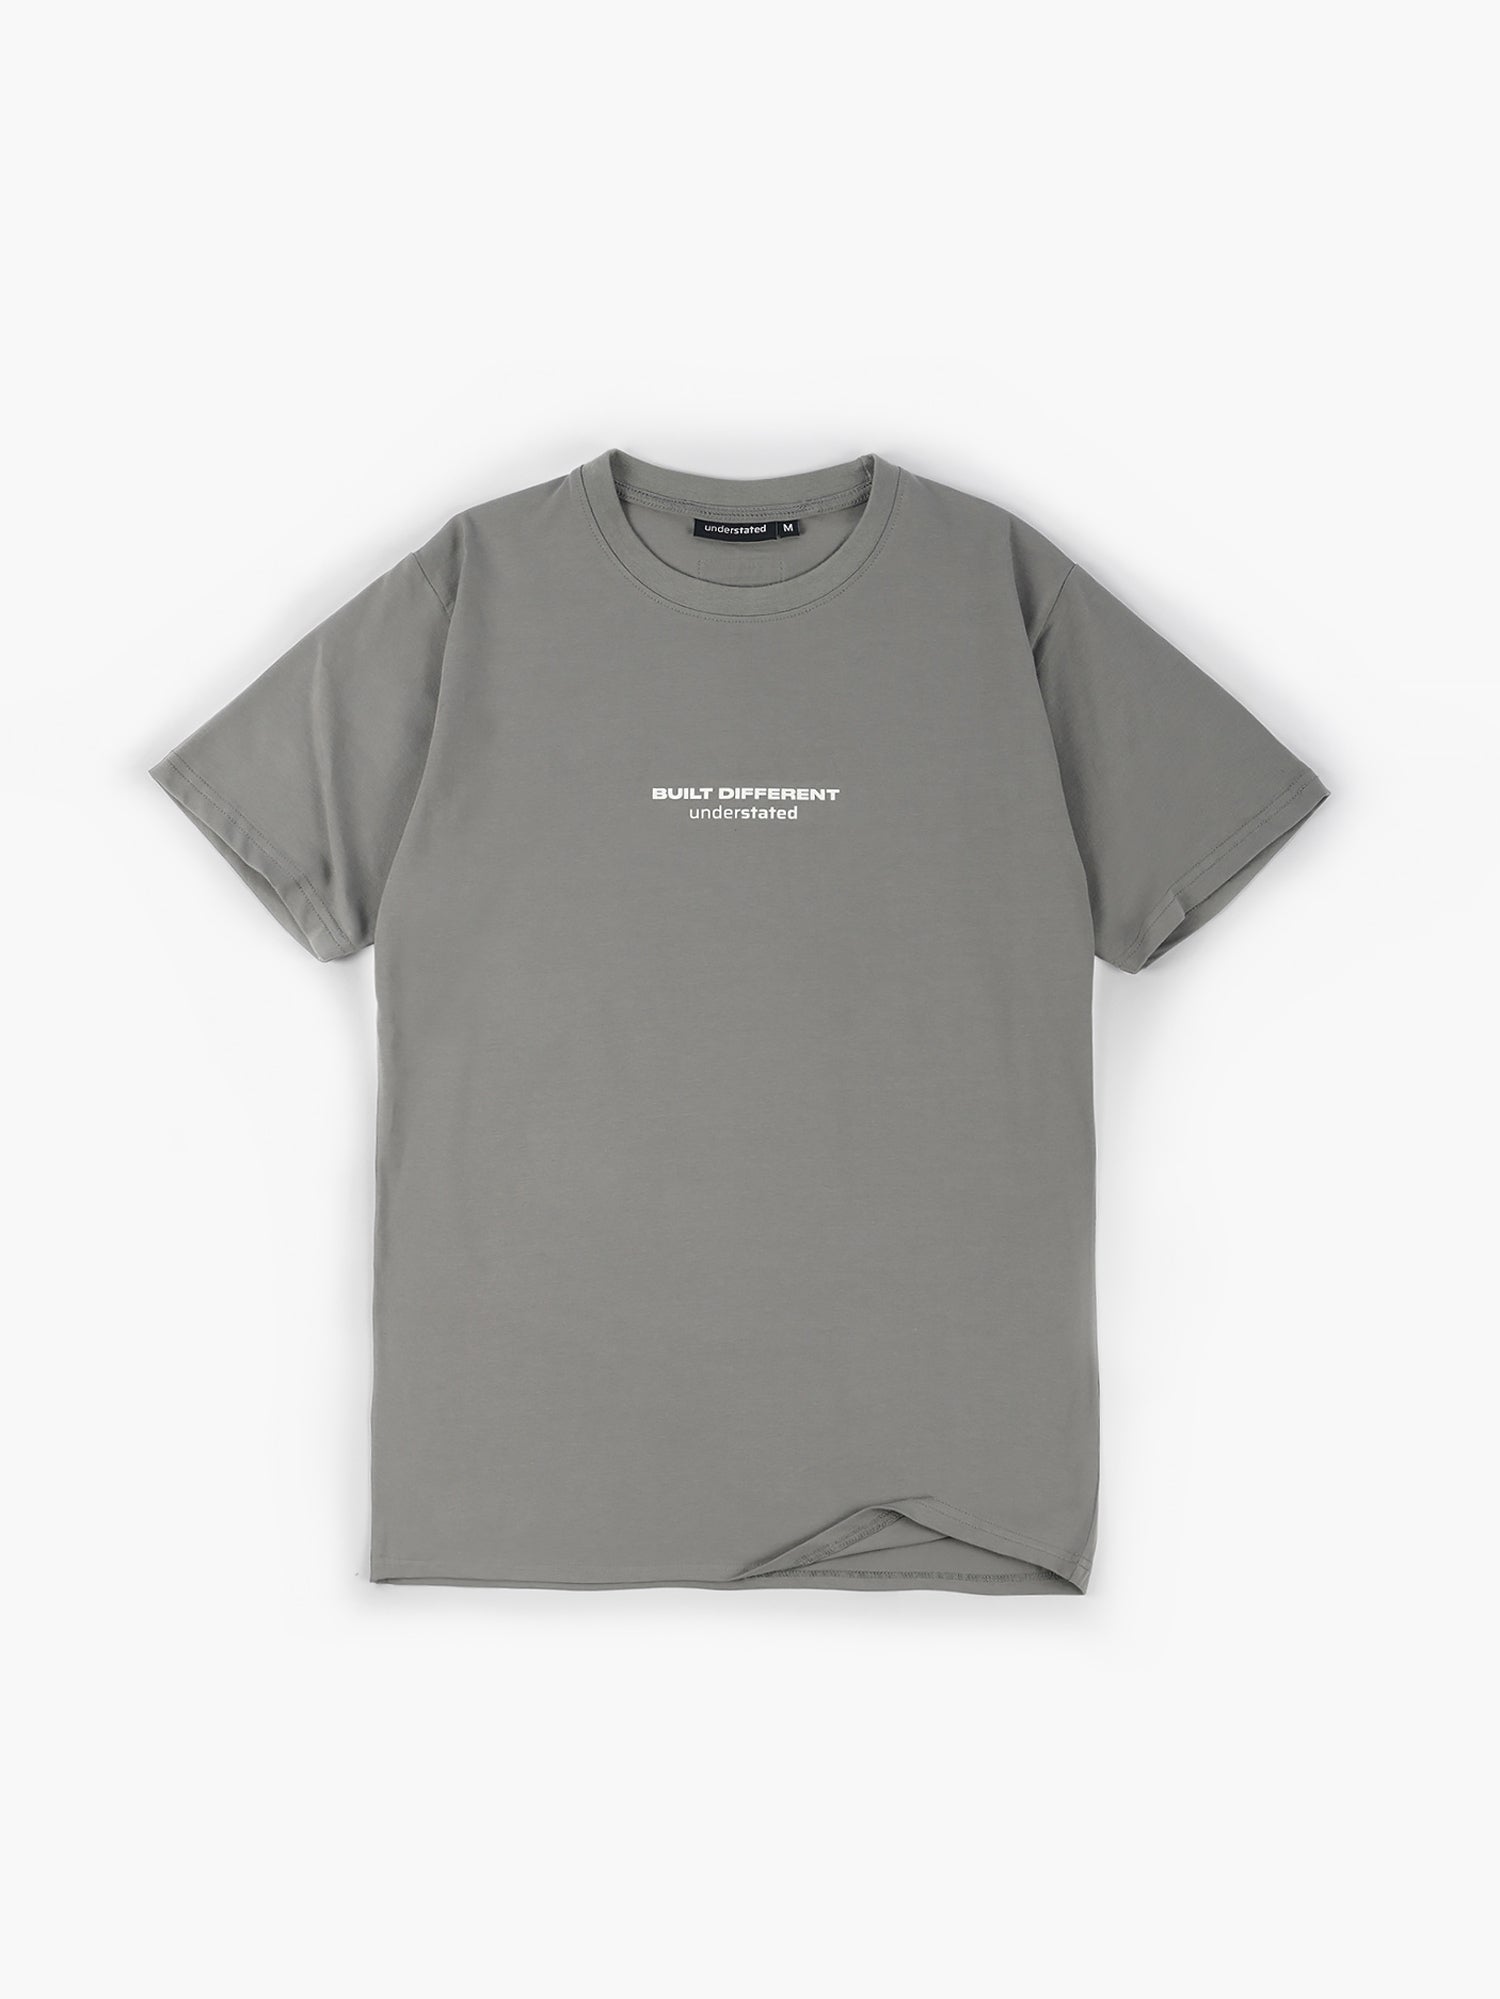 Built Different / Regular T-Shirt (Stone Gray)